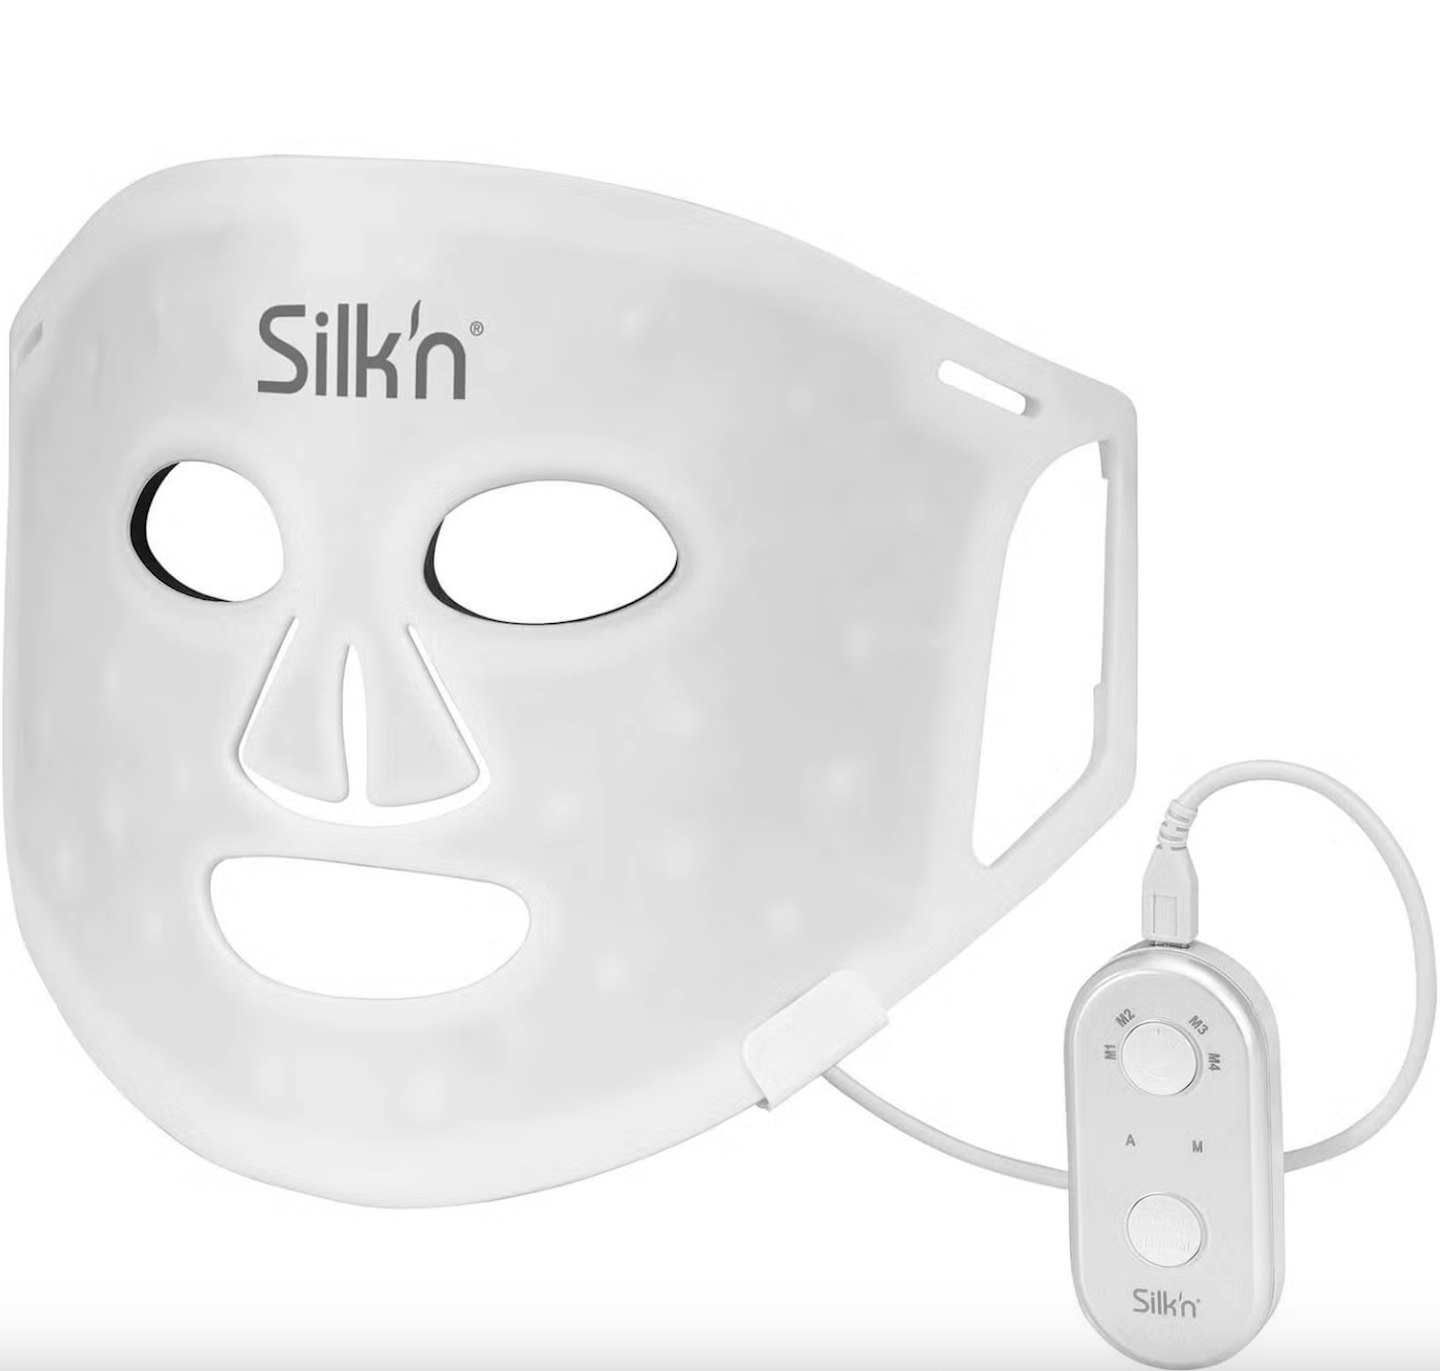 Silk'n LED Light Mask